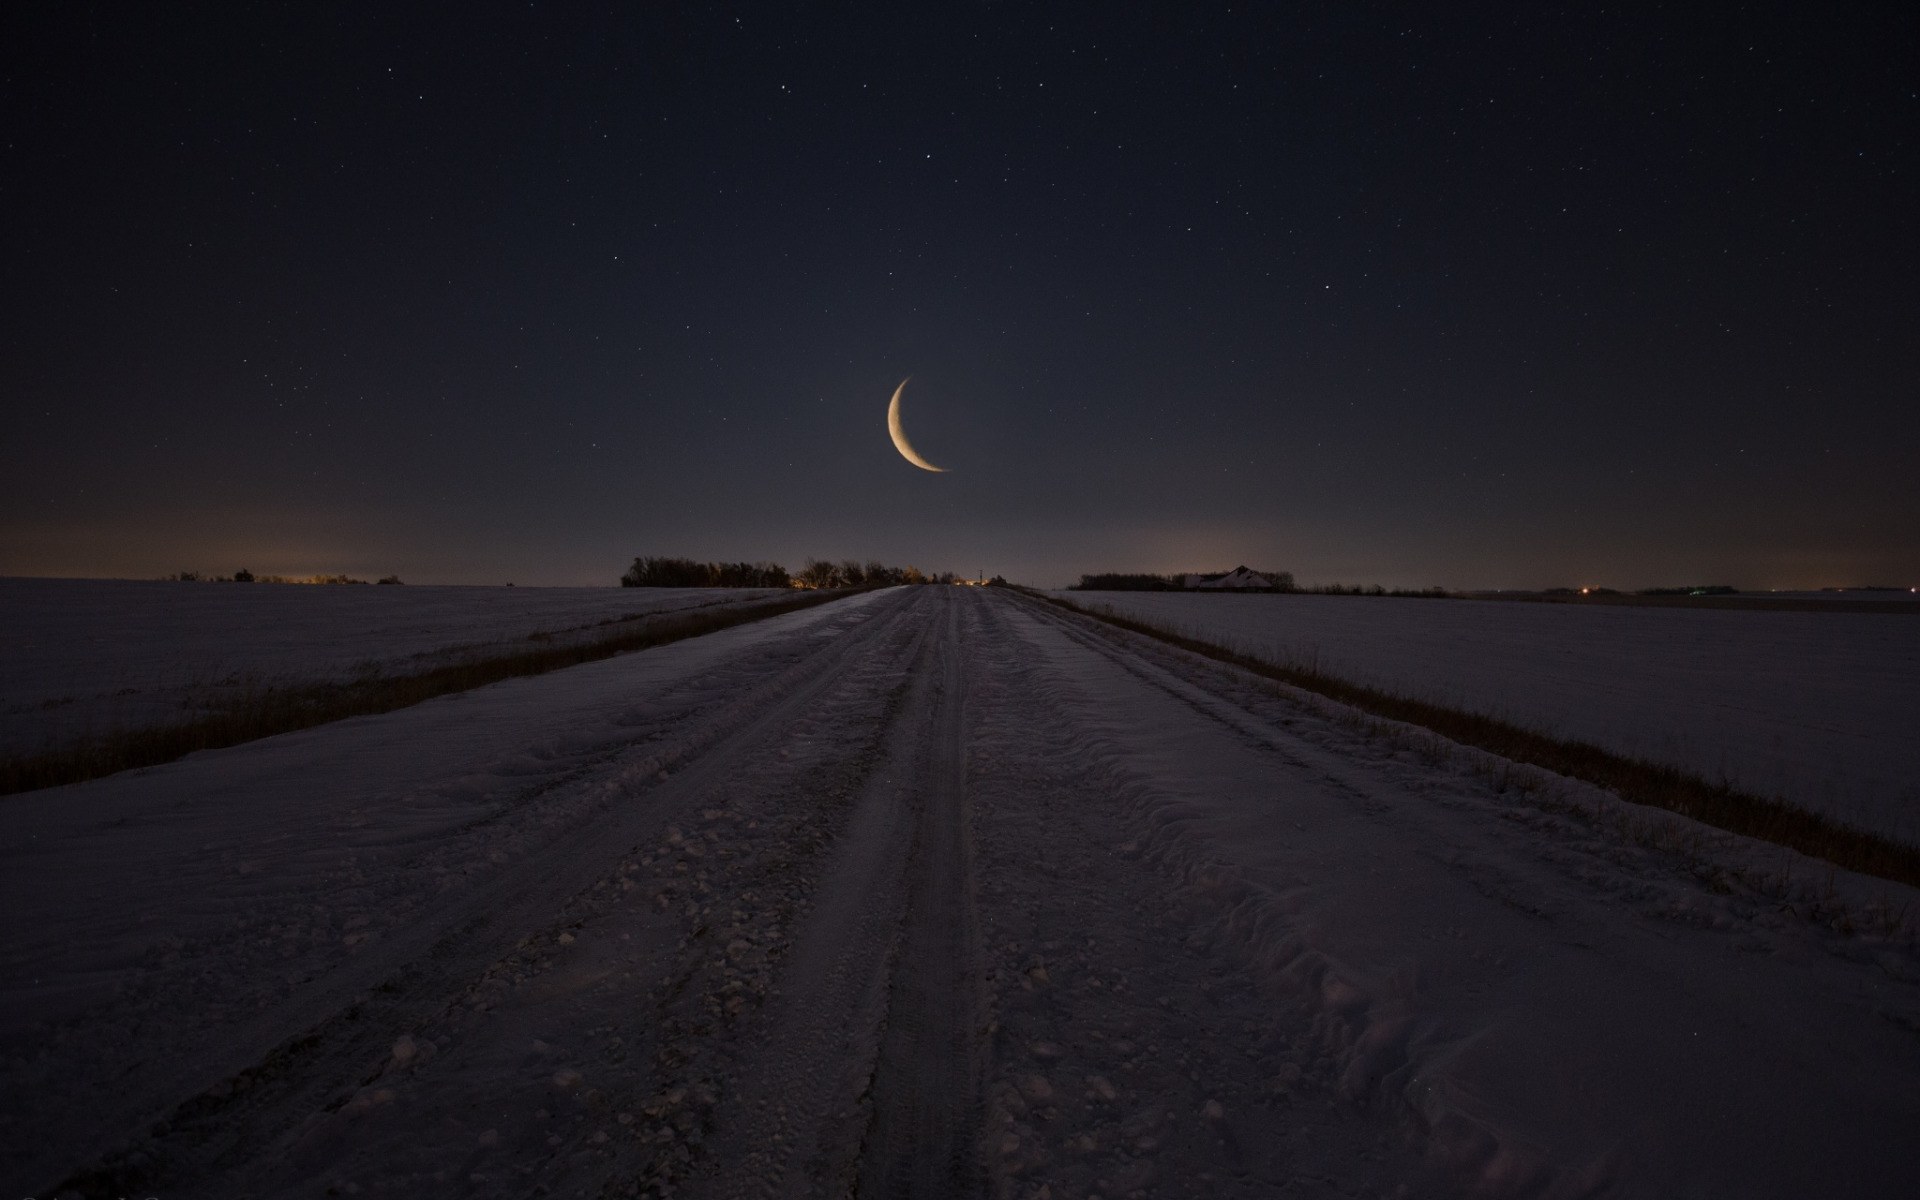 Луна поднималась и освещала. Снежная дорога в поле. Караван пол Луни. Торговец мечтой в поле под луной.